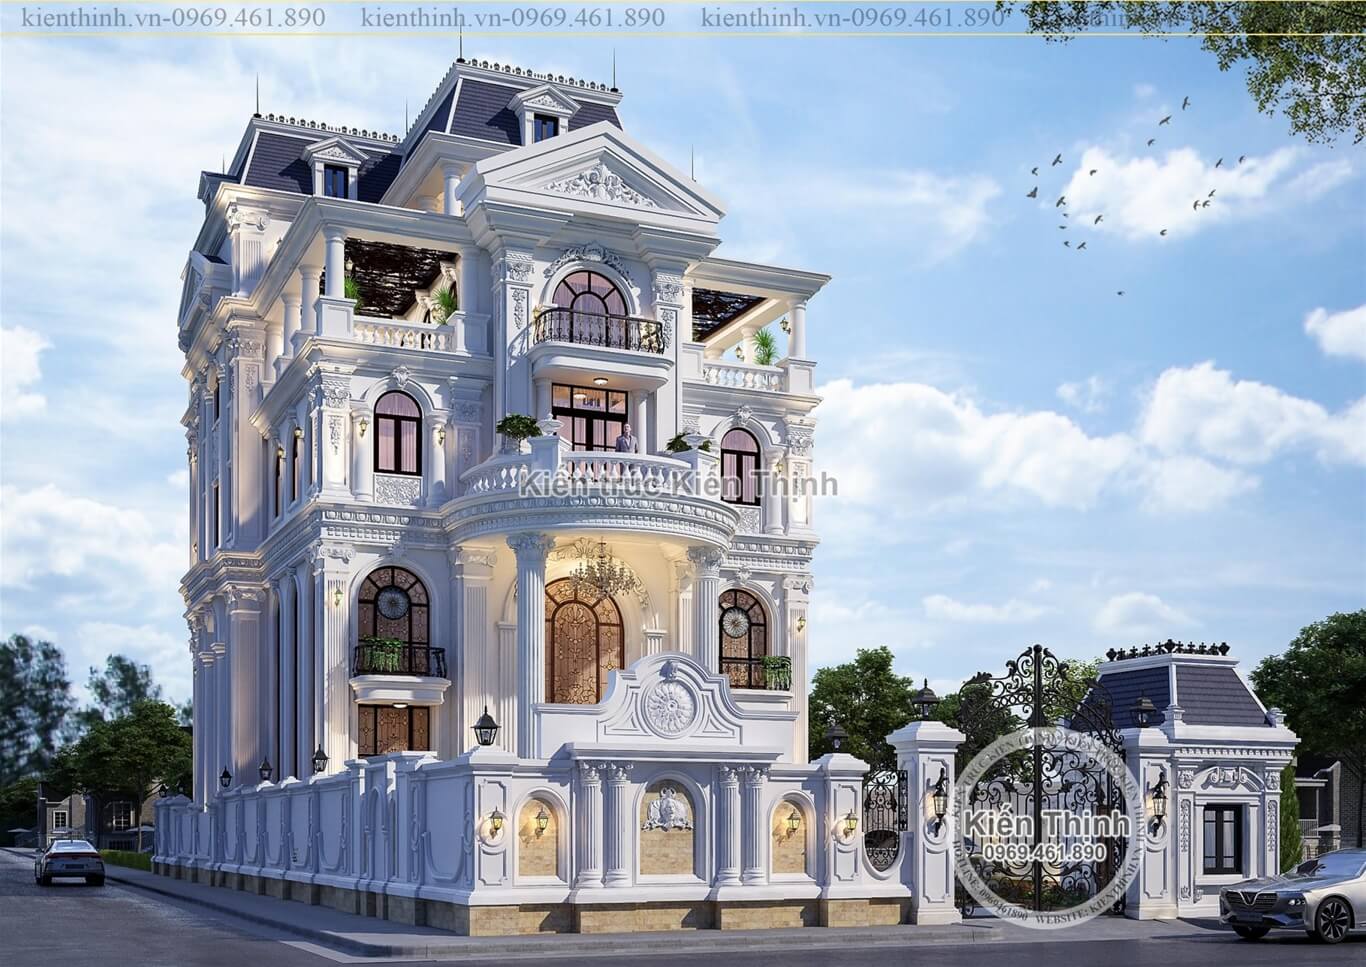  Các mẫu thiết kế biệt thự lâu đài tân cổ điển châu Âu - kiểu Pháp đẹp và sang trọng theo xu hướng năm 2019 